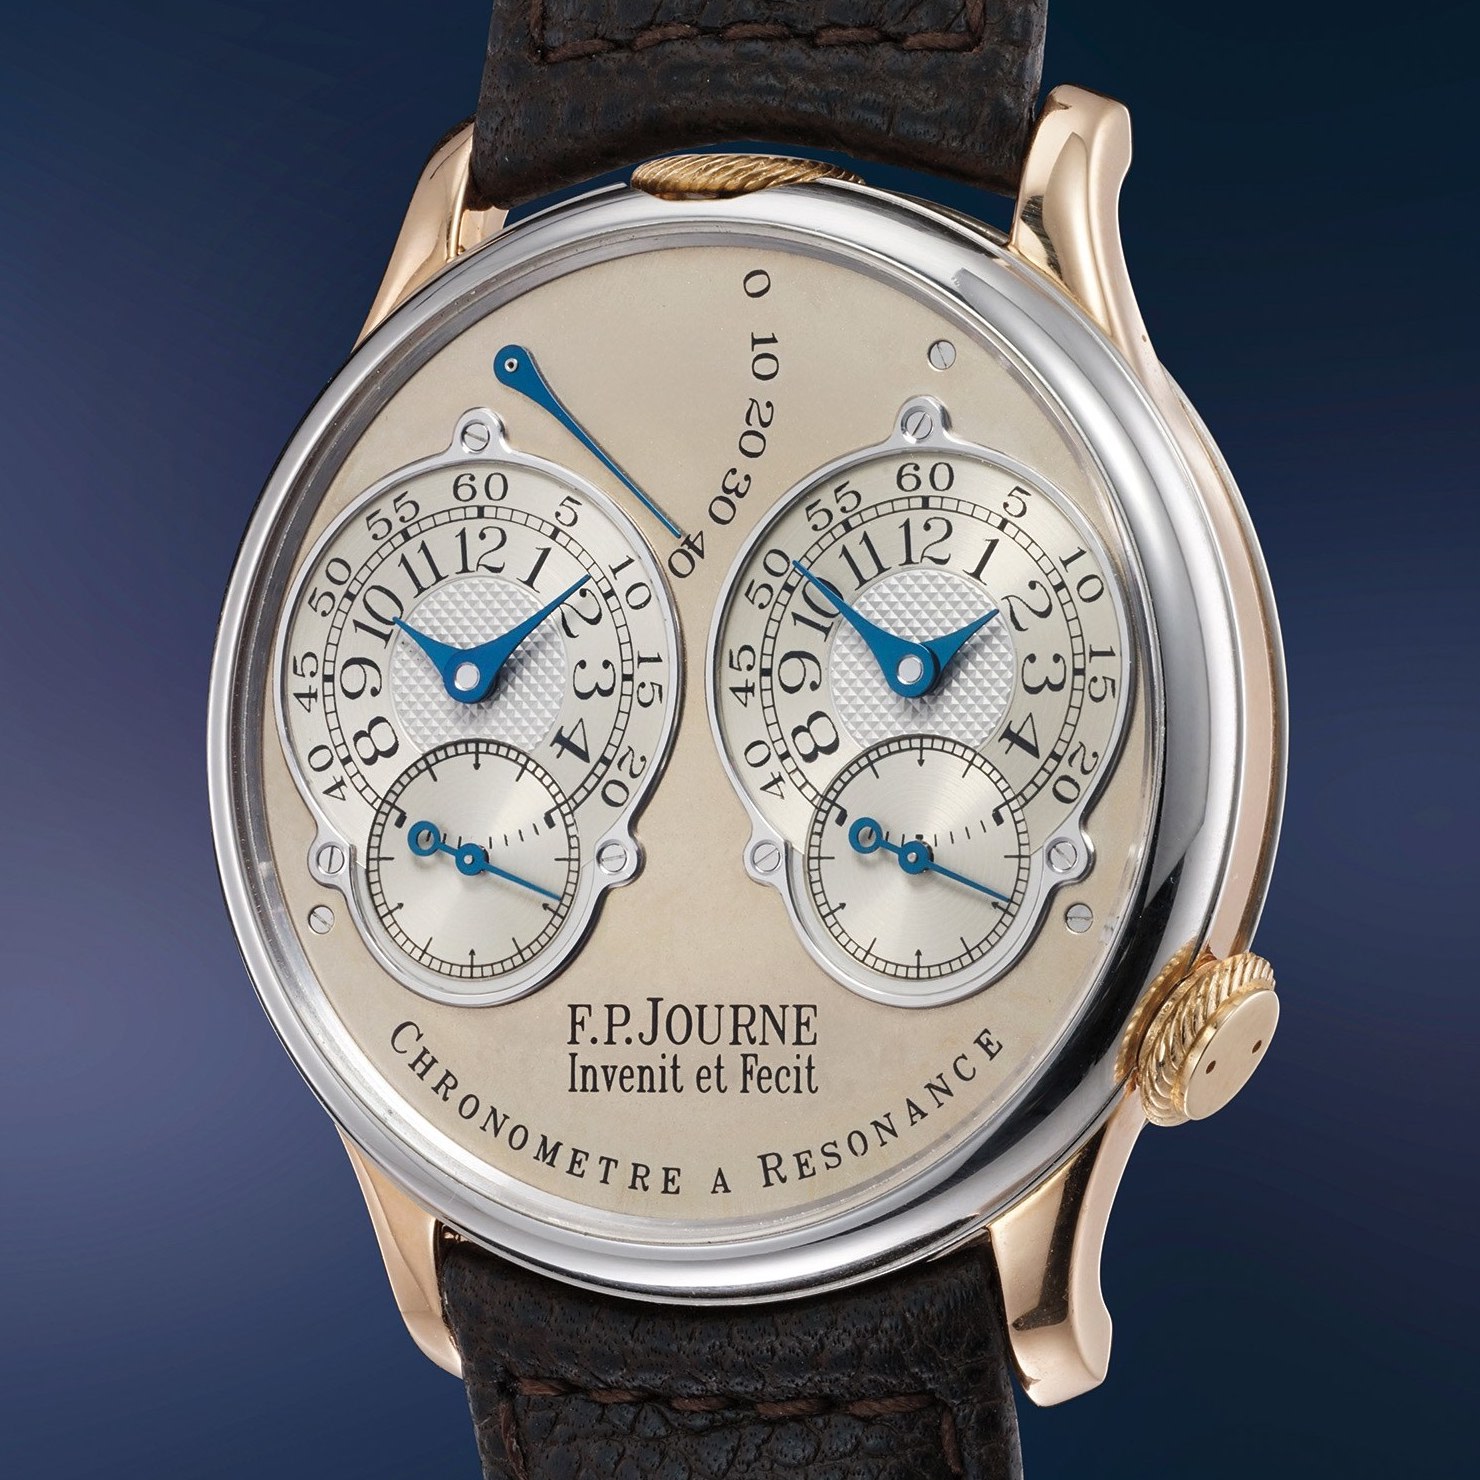 FP Journe Chronometre a Resonance Souscription Phillips Geneva Watch Auction XIV - 1